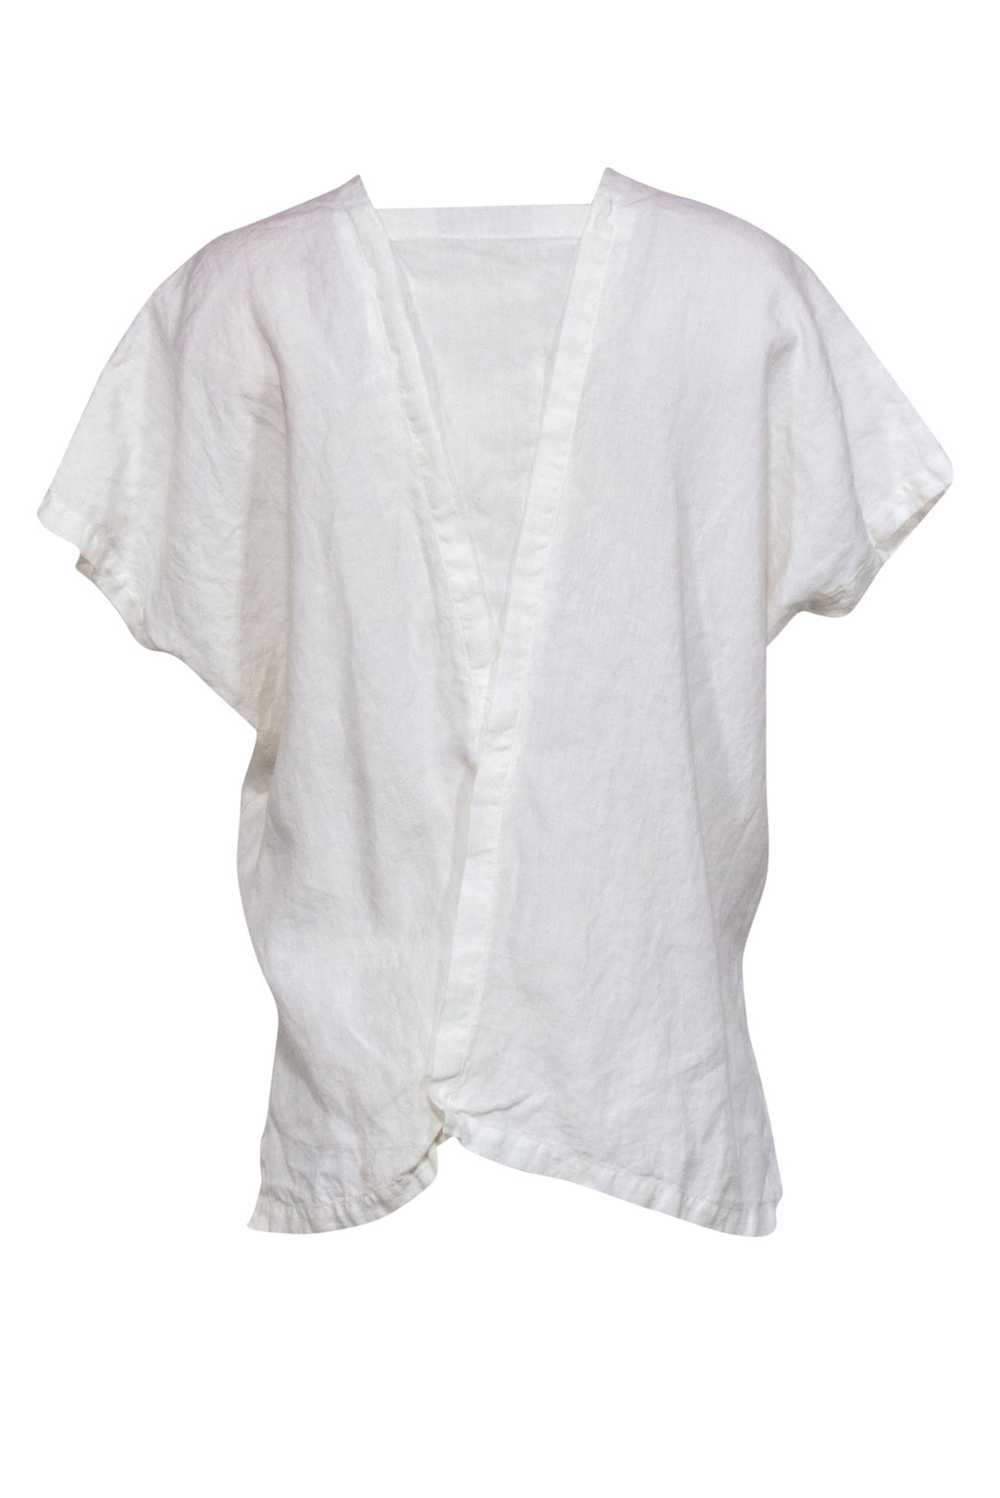 Shirin Guild - White Linen Draped Asymmetric Blou… - image 3